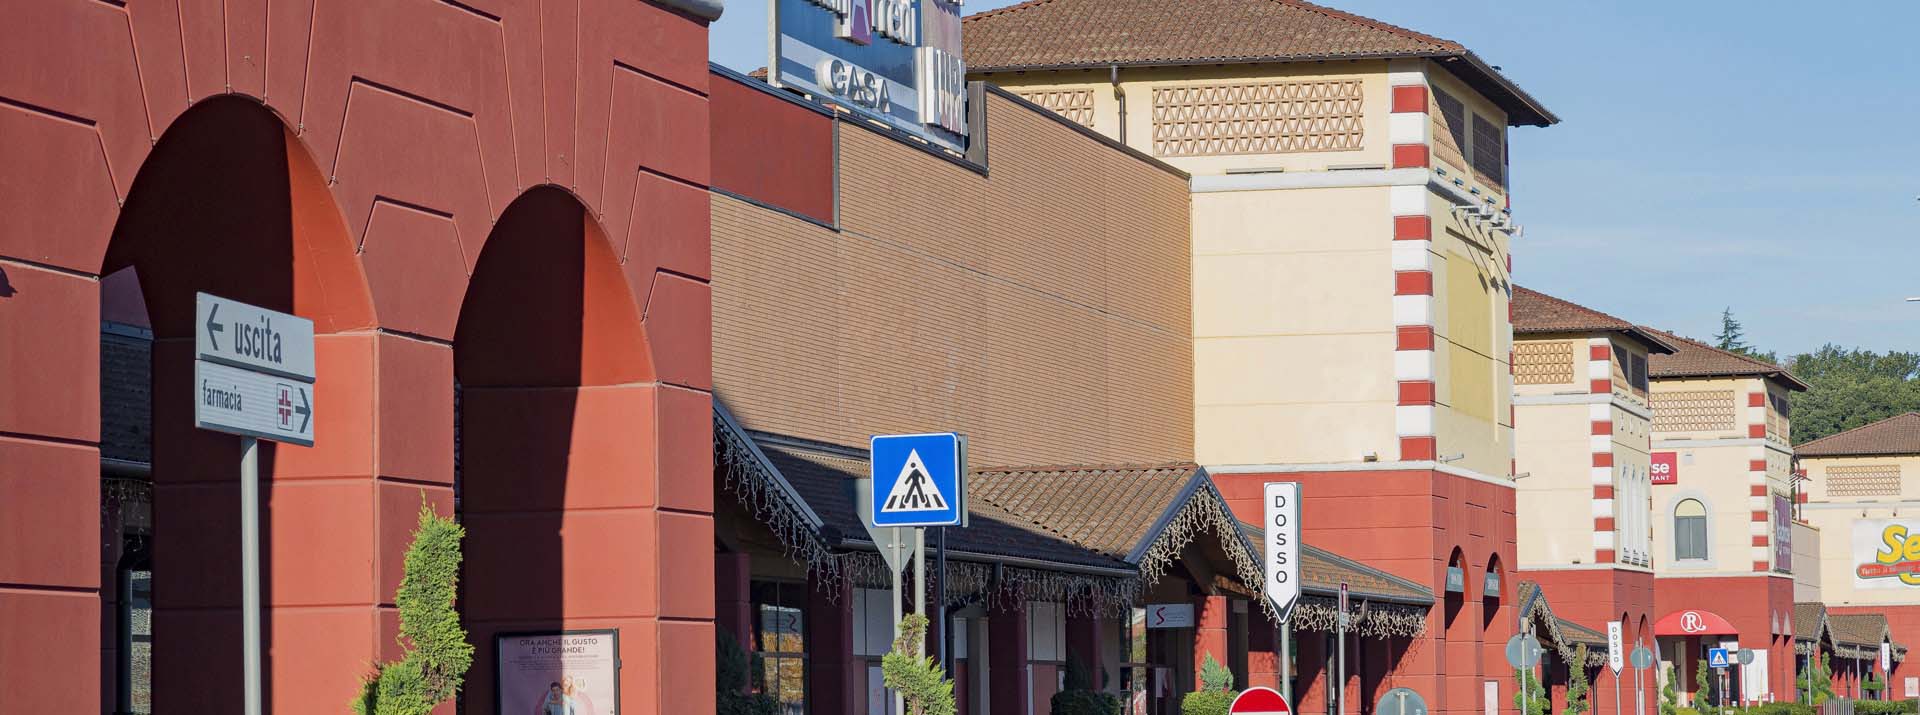 Riqualificazione del centro commerciale Serravalle a cura di Boero